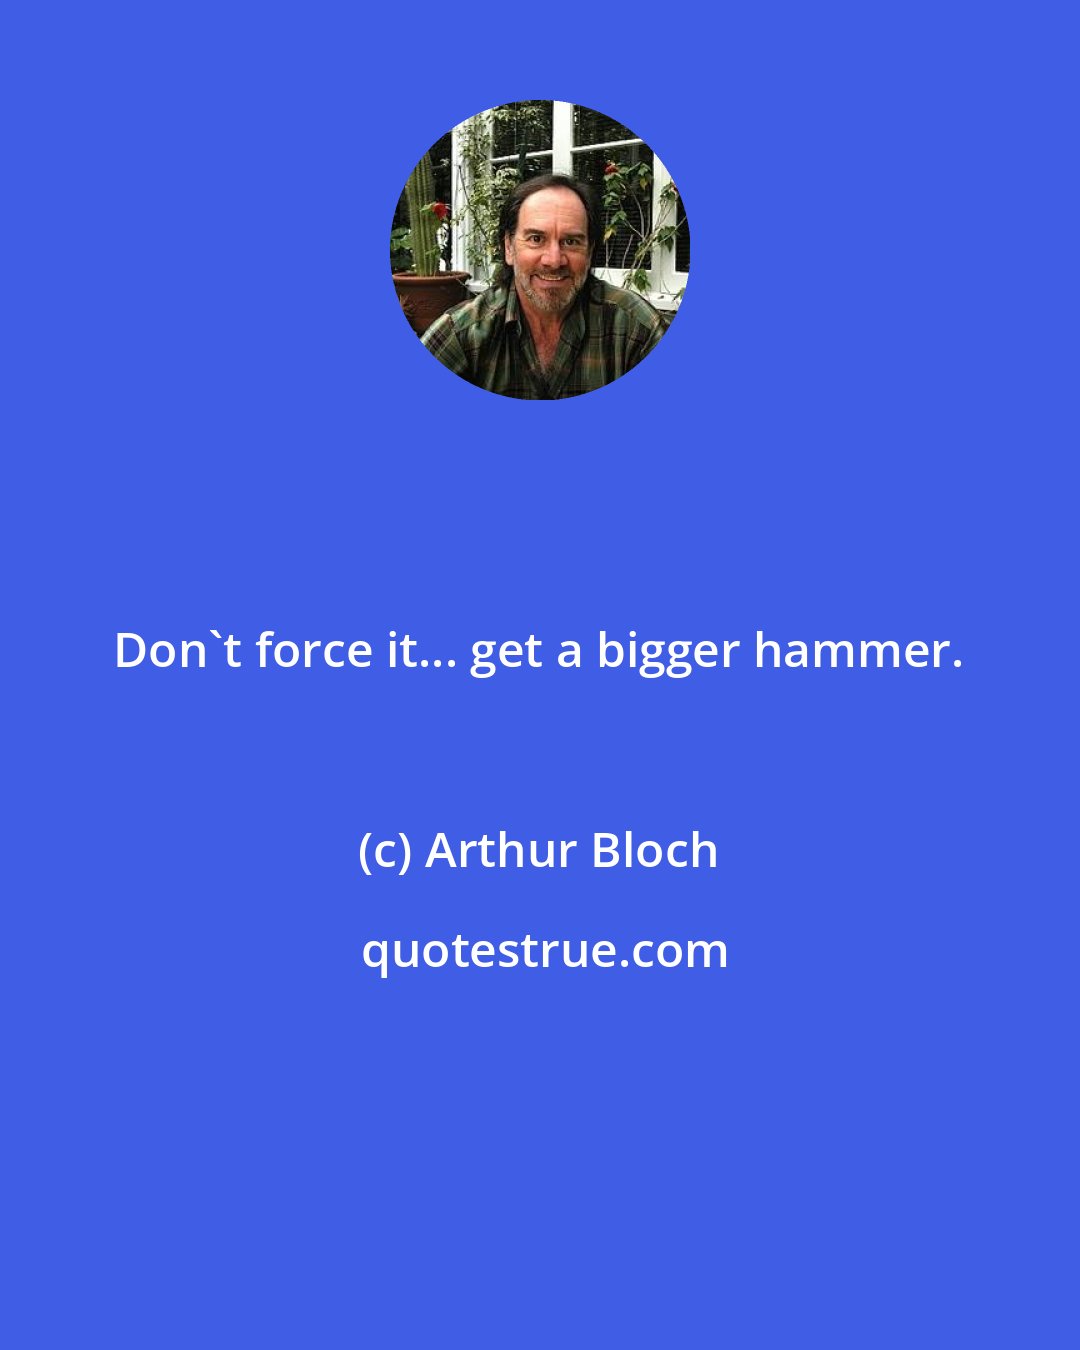 Arthur Bloch: Don't force it... get a bigger hammer.